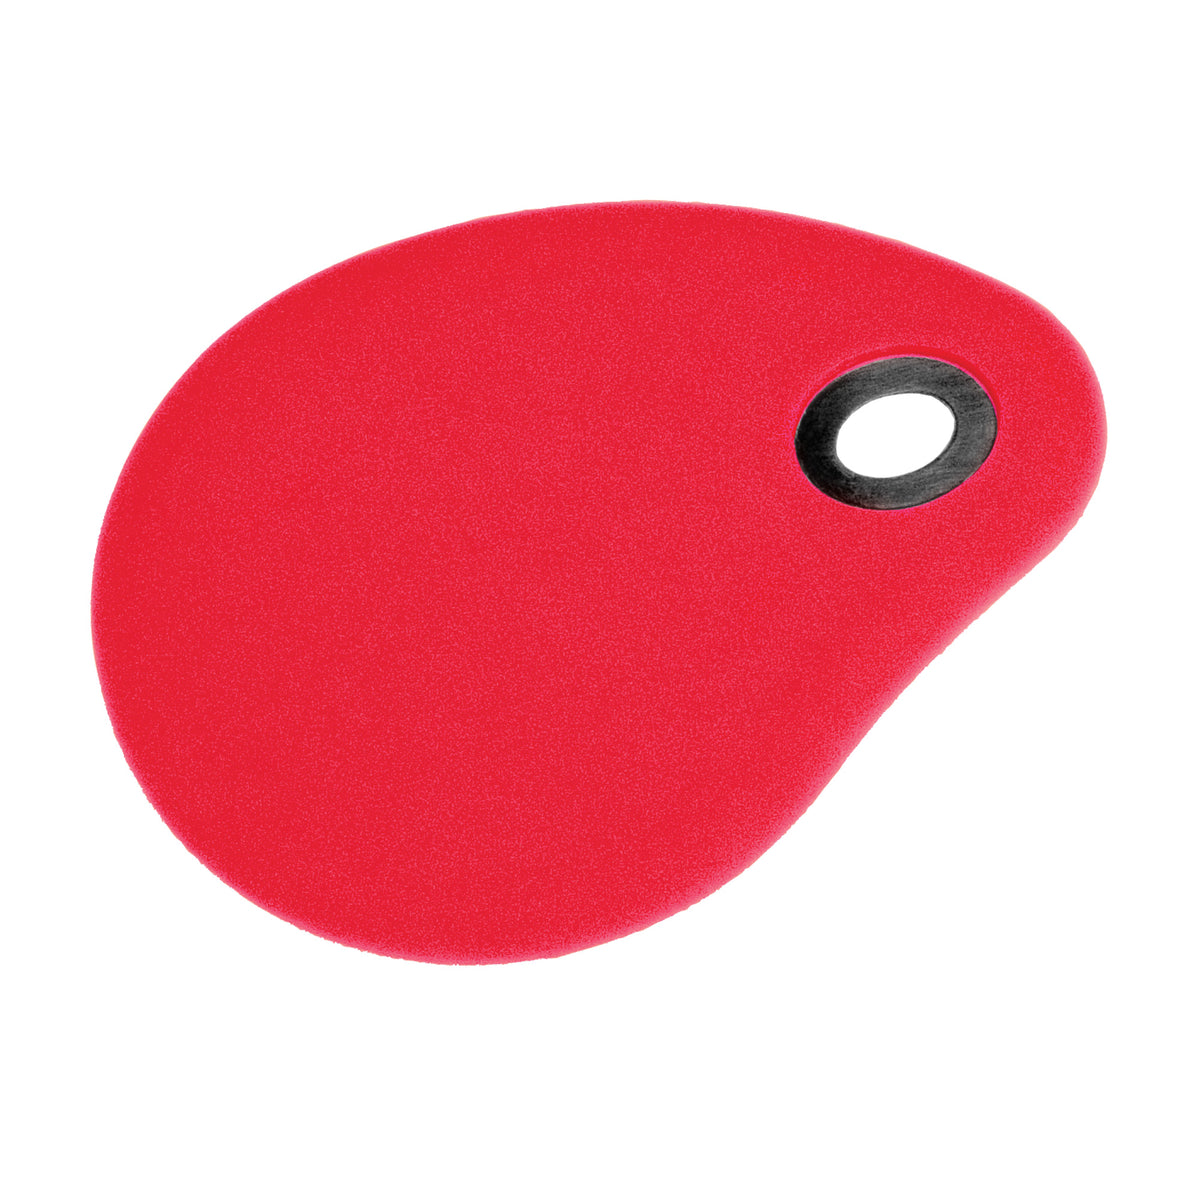 Bowl Scraper-Red Silicone